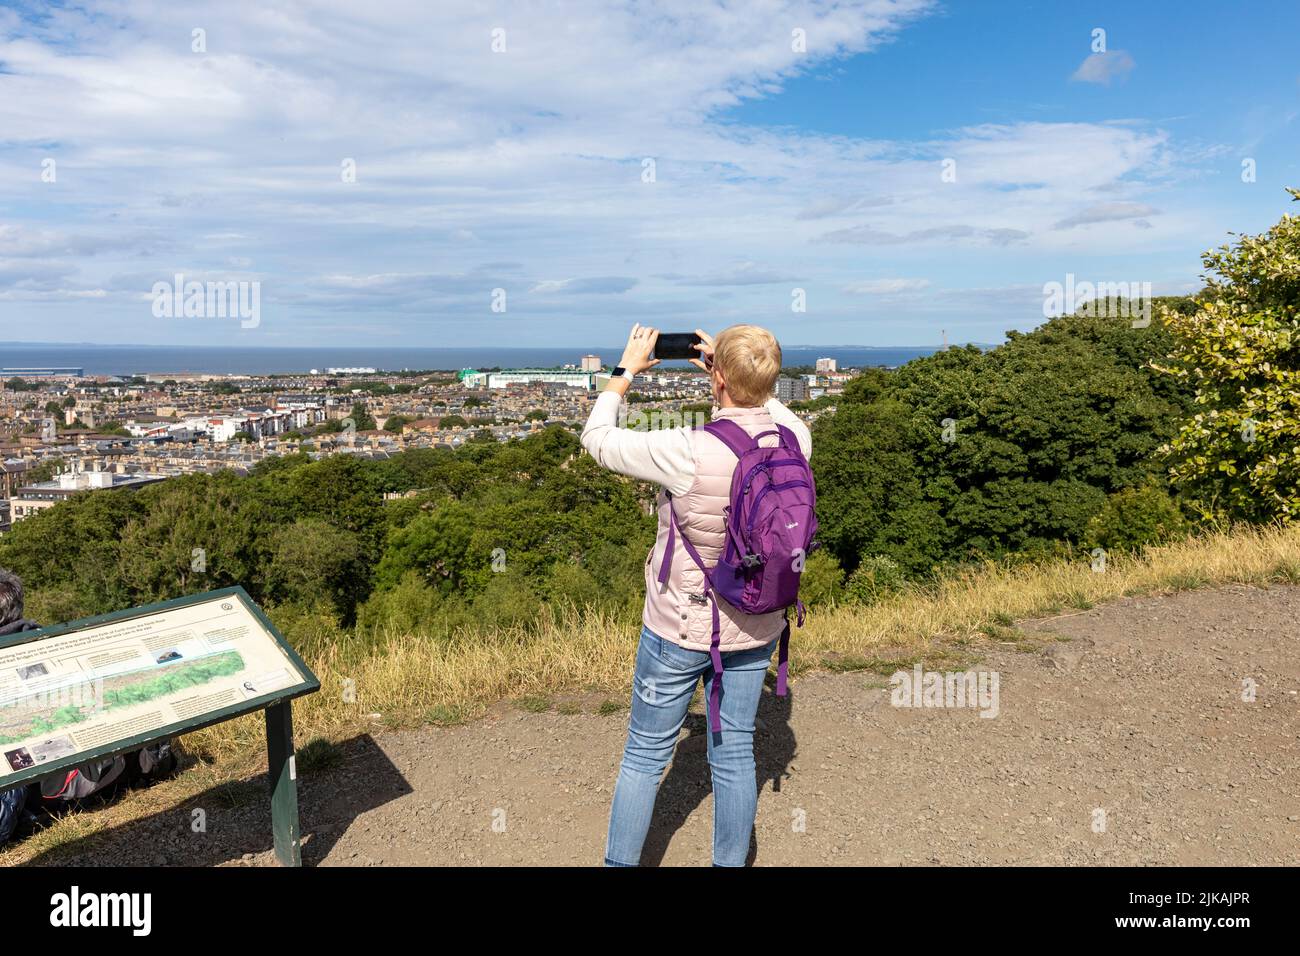 Edinburgh Calton Hill, modèle libéré femme touriste utilise iPhone pour photographier edinburgh paysage urbain, ciel bleu jour d'été, Écosse, juillet 2022 Banque D'Images